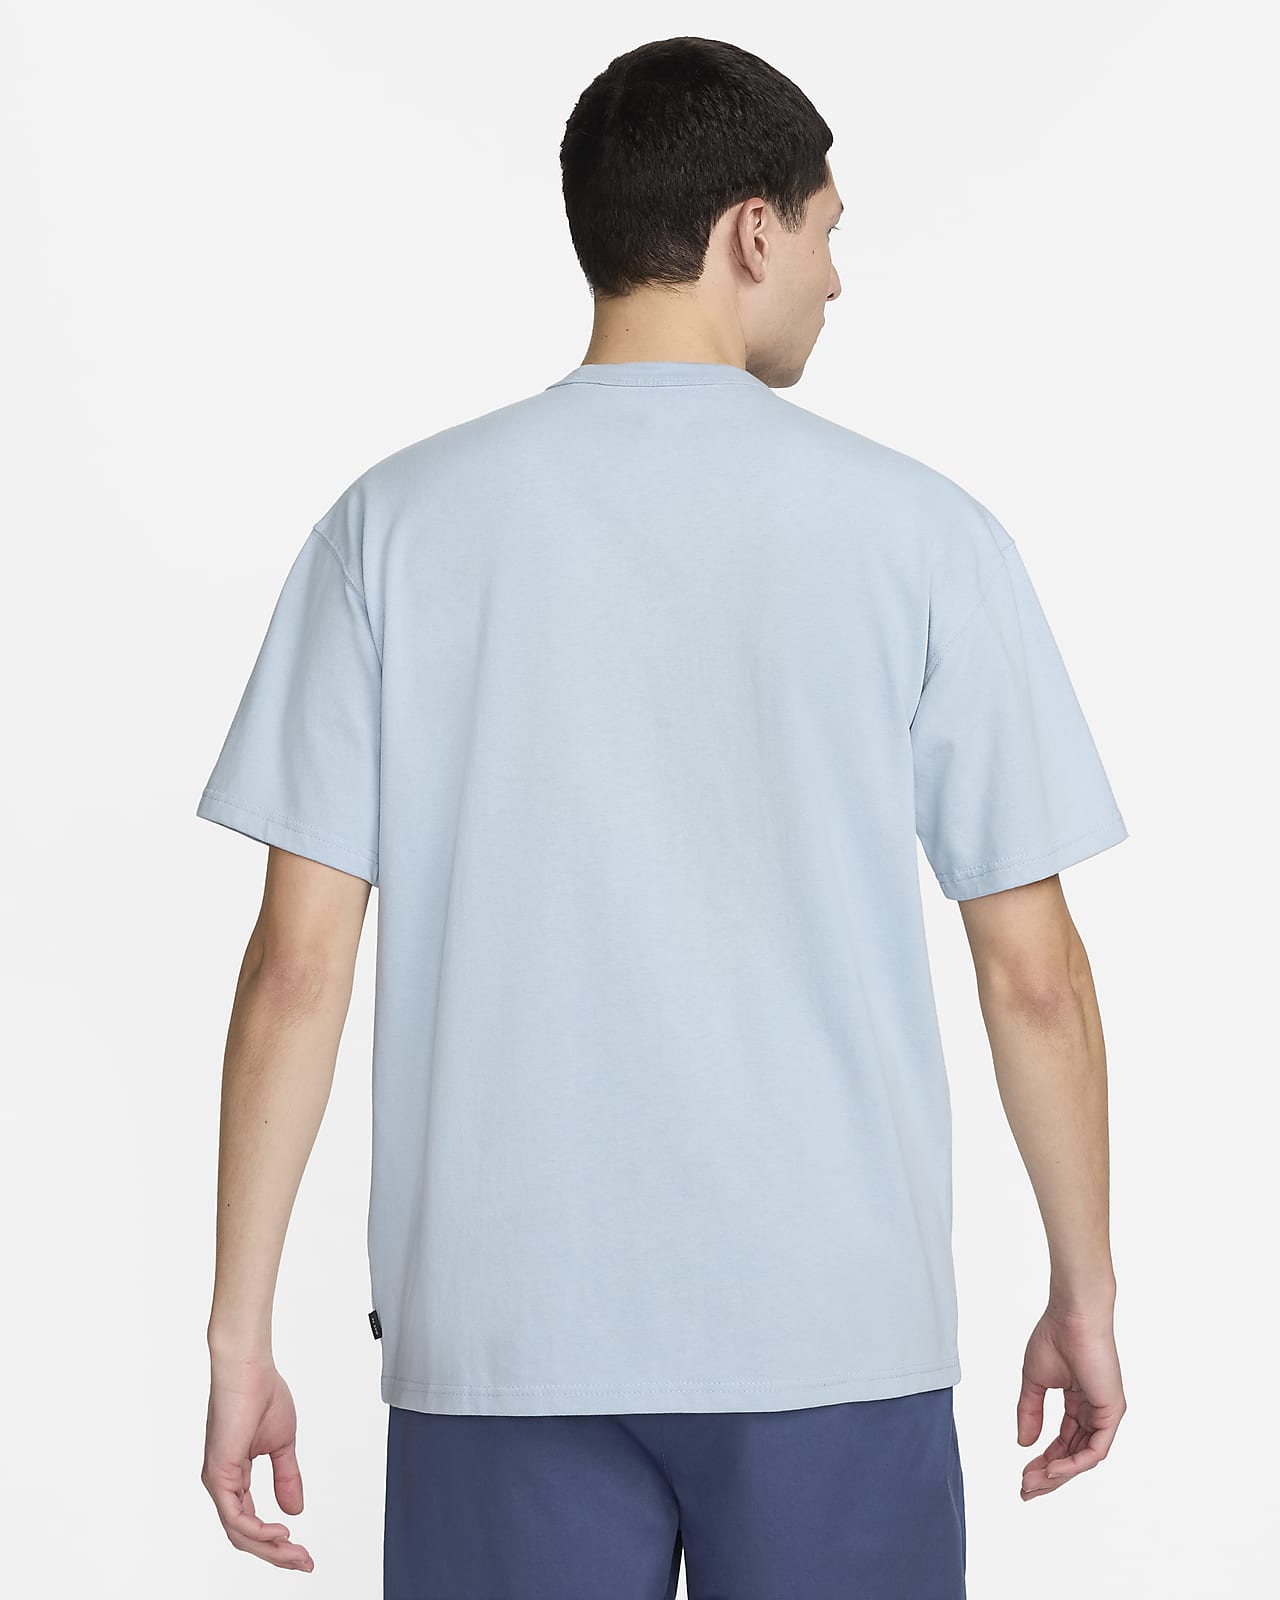 OFF-WHITE x Nike 005 T-Shirts (Asia Sizing) Black